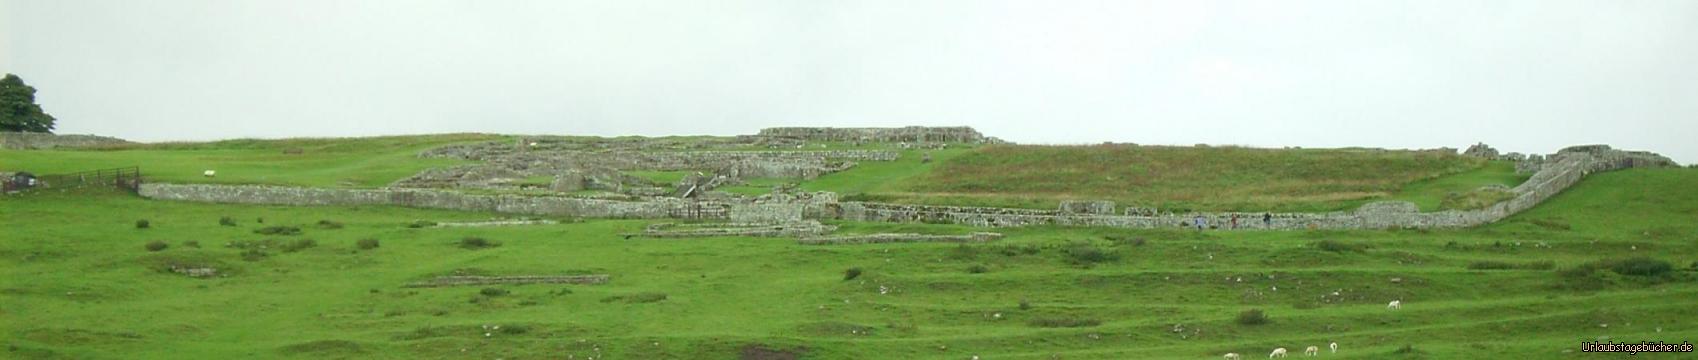 Housesteads: die Überreste des römischen Forts Housesteads, erbaut zusammen mit dem Hadrianswall um 124 n. Chr.